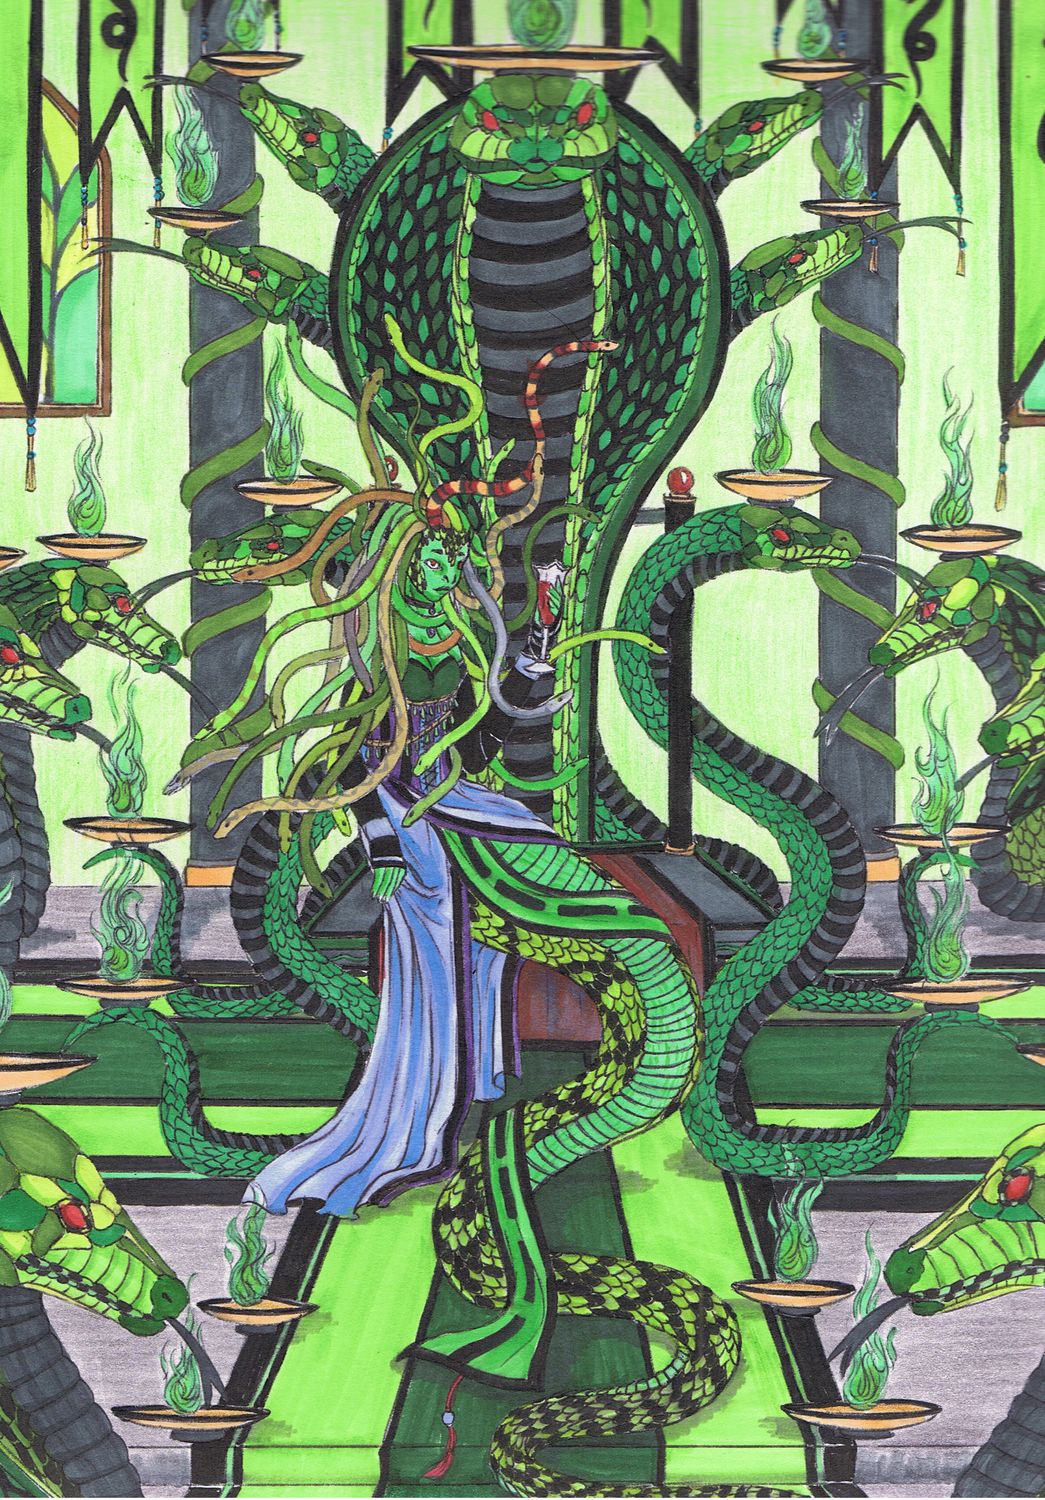 Mesusa - Queen of serpents by Ganjamira